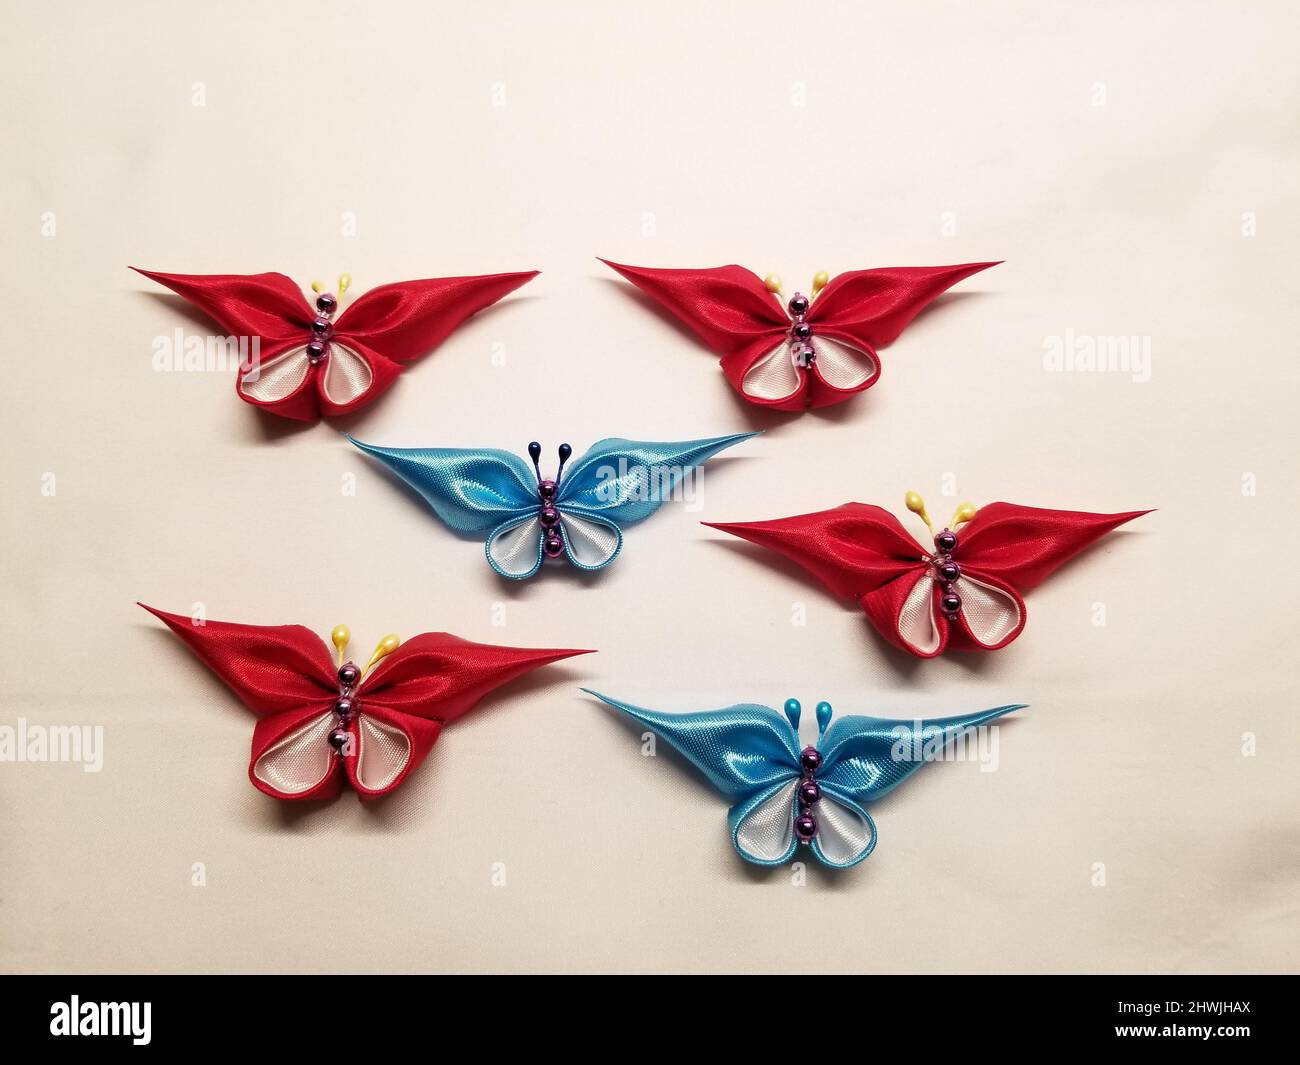 Handmade Fabric Butterflies -02 Stock Photo